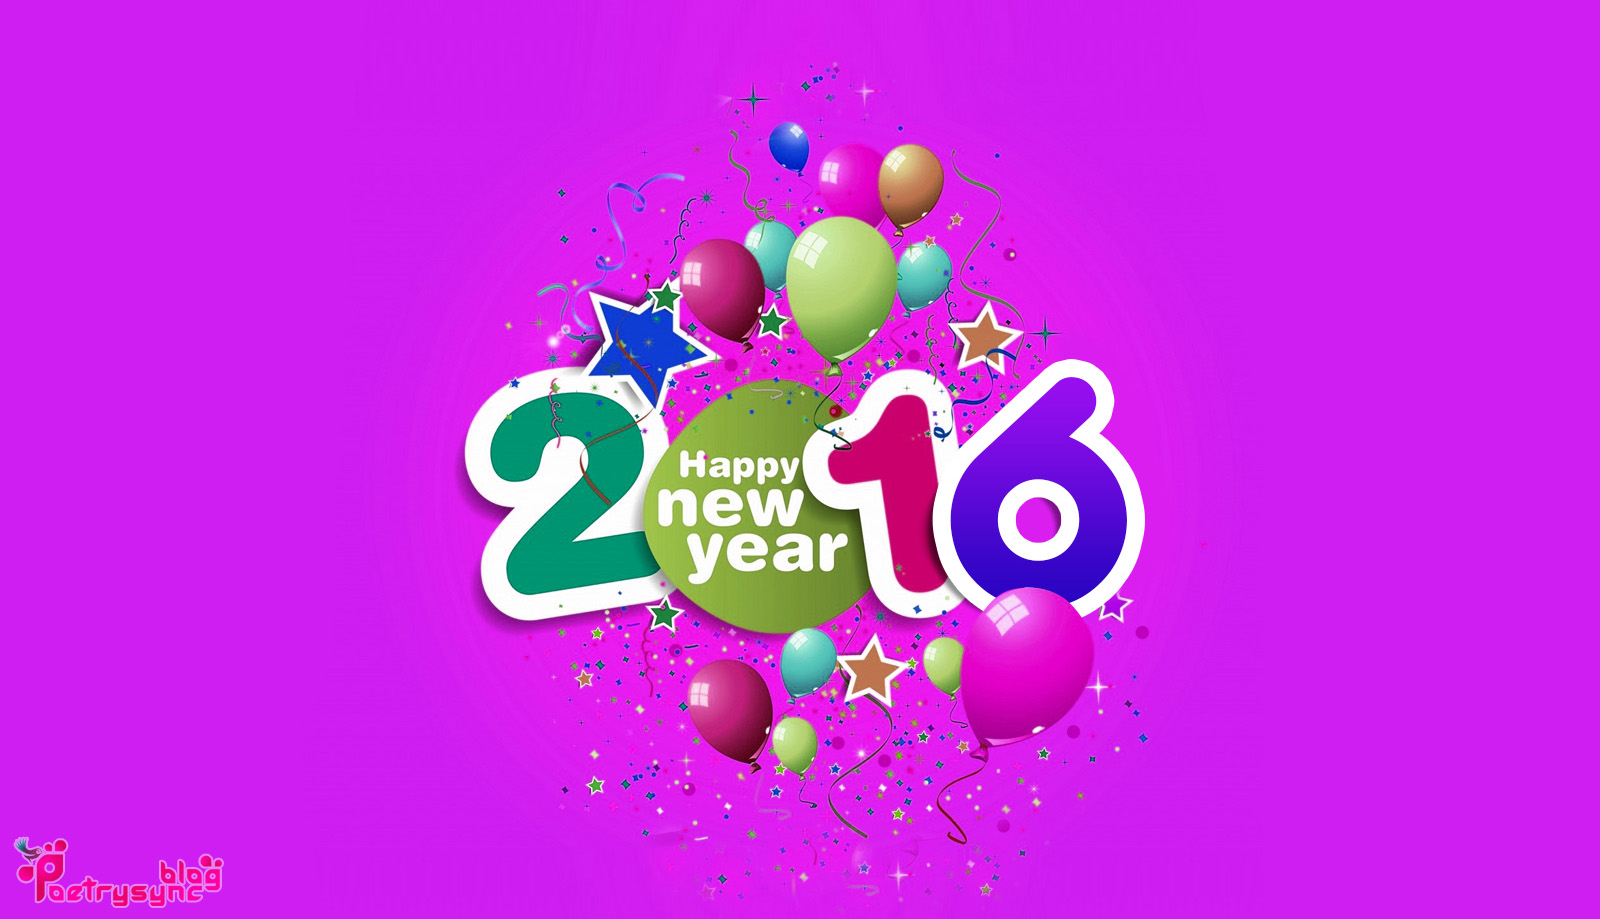 Happy New Year 2016 Desktop Wallpaper